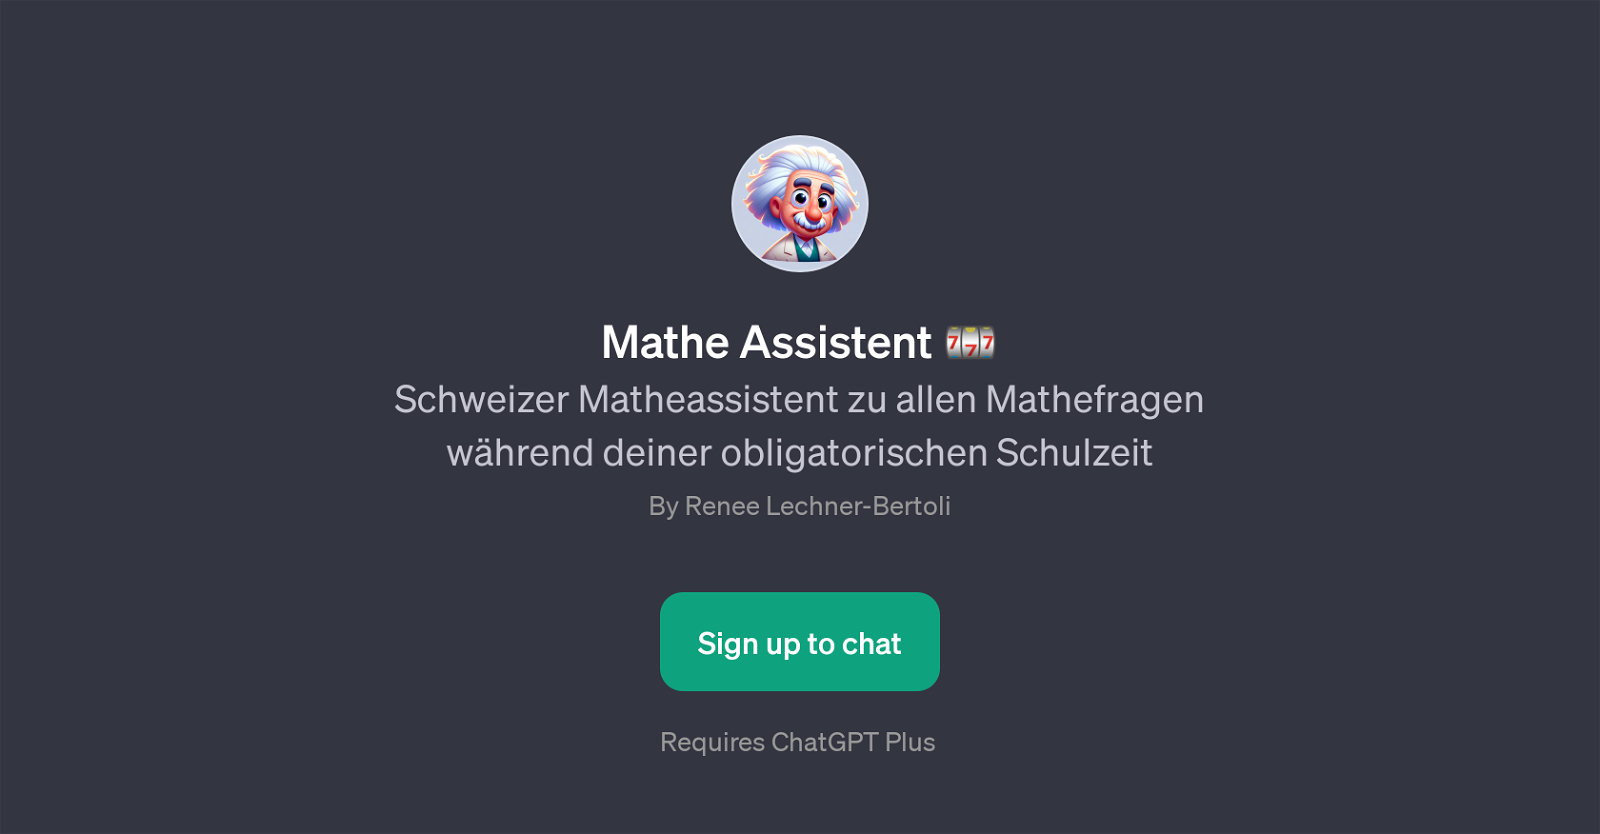 Mathe Assistent website